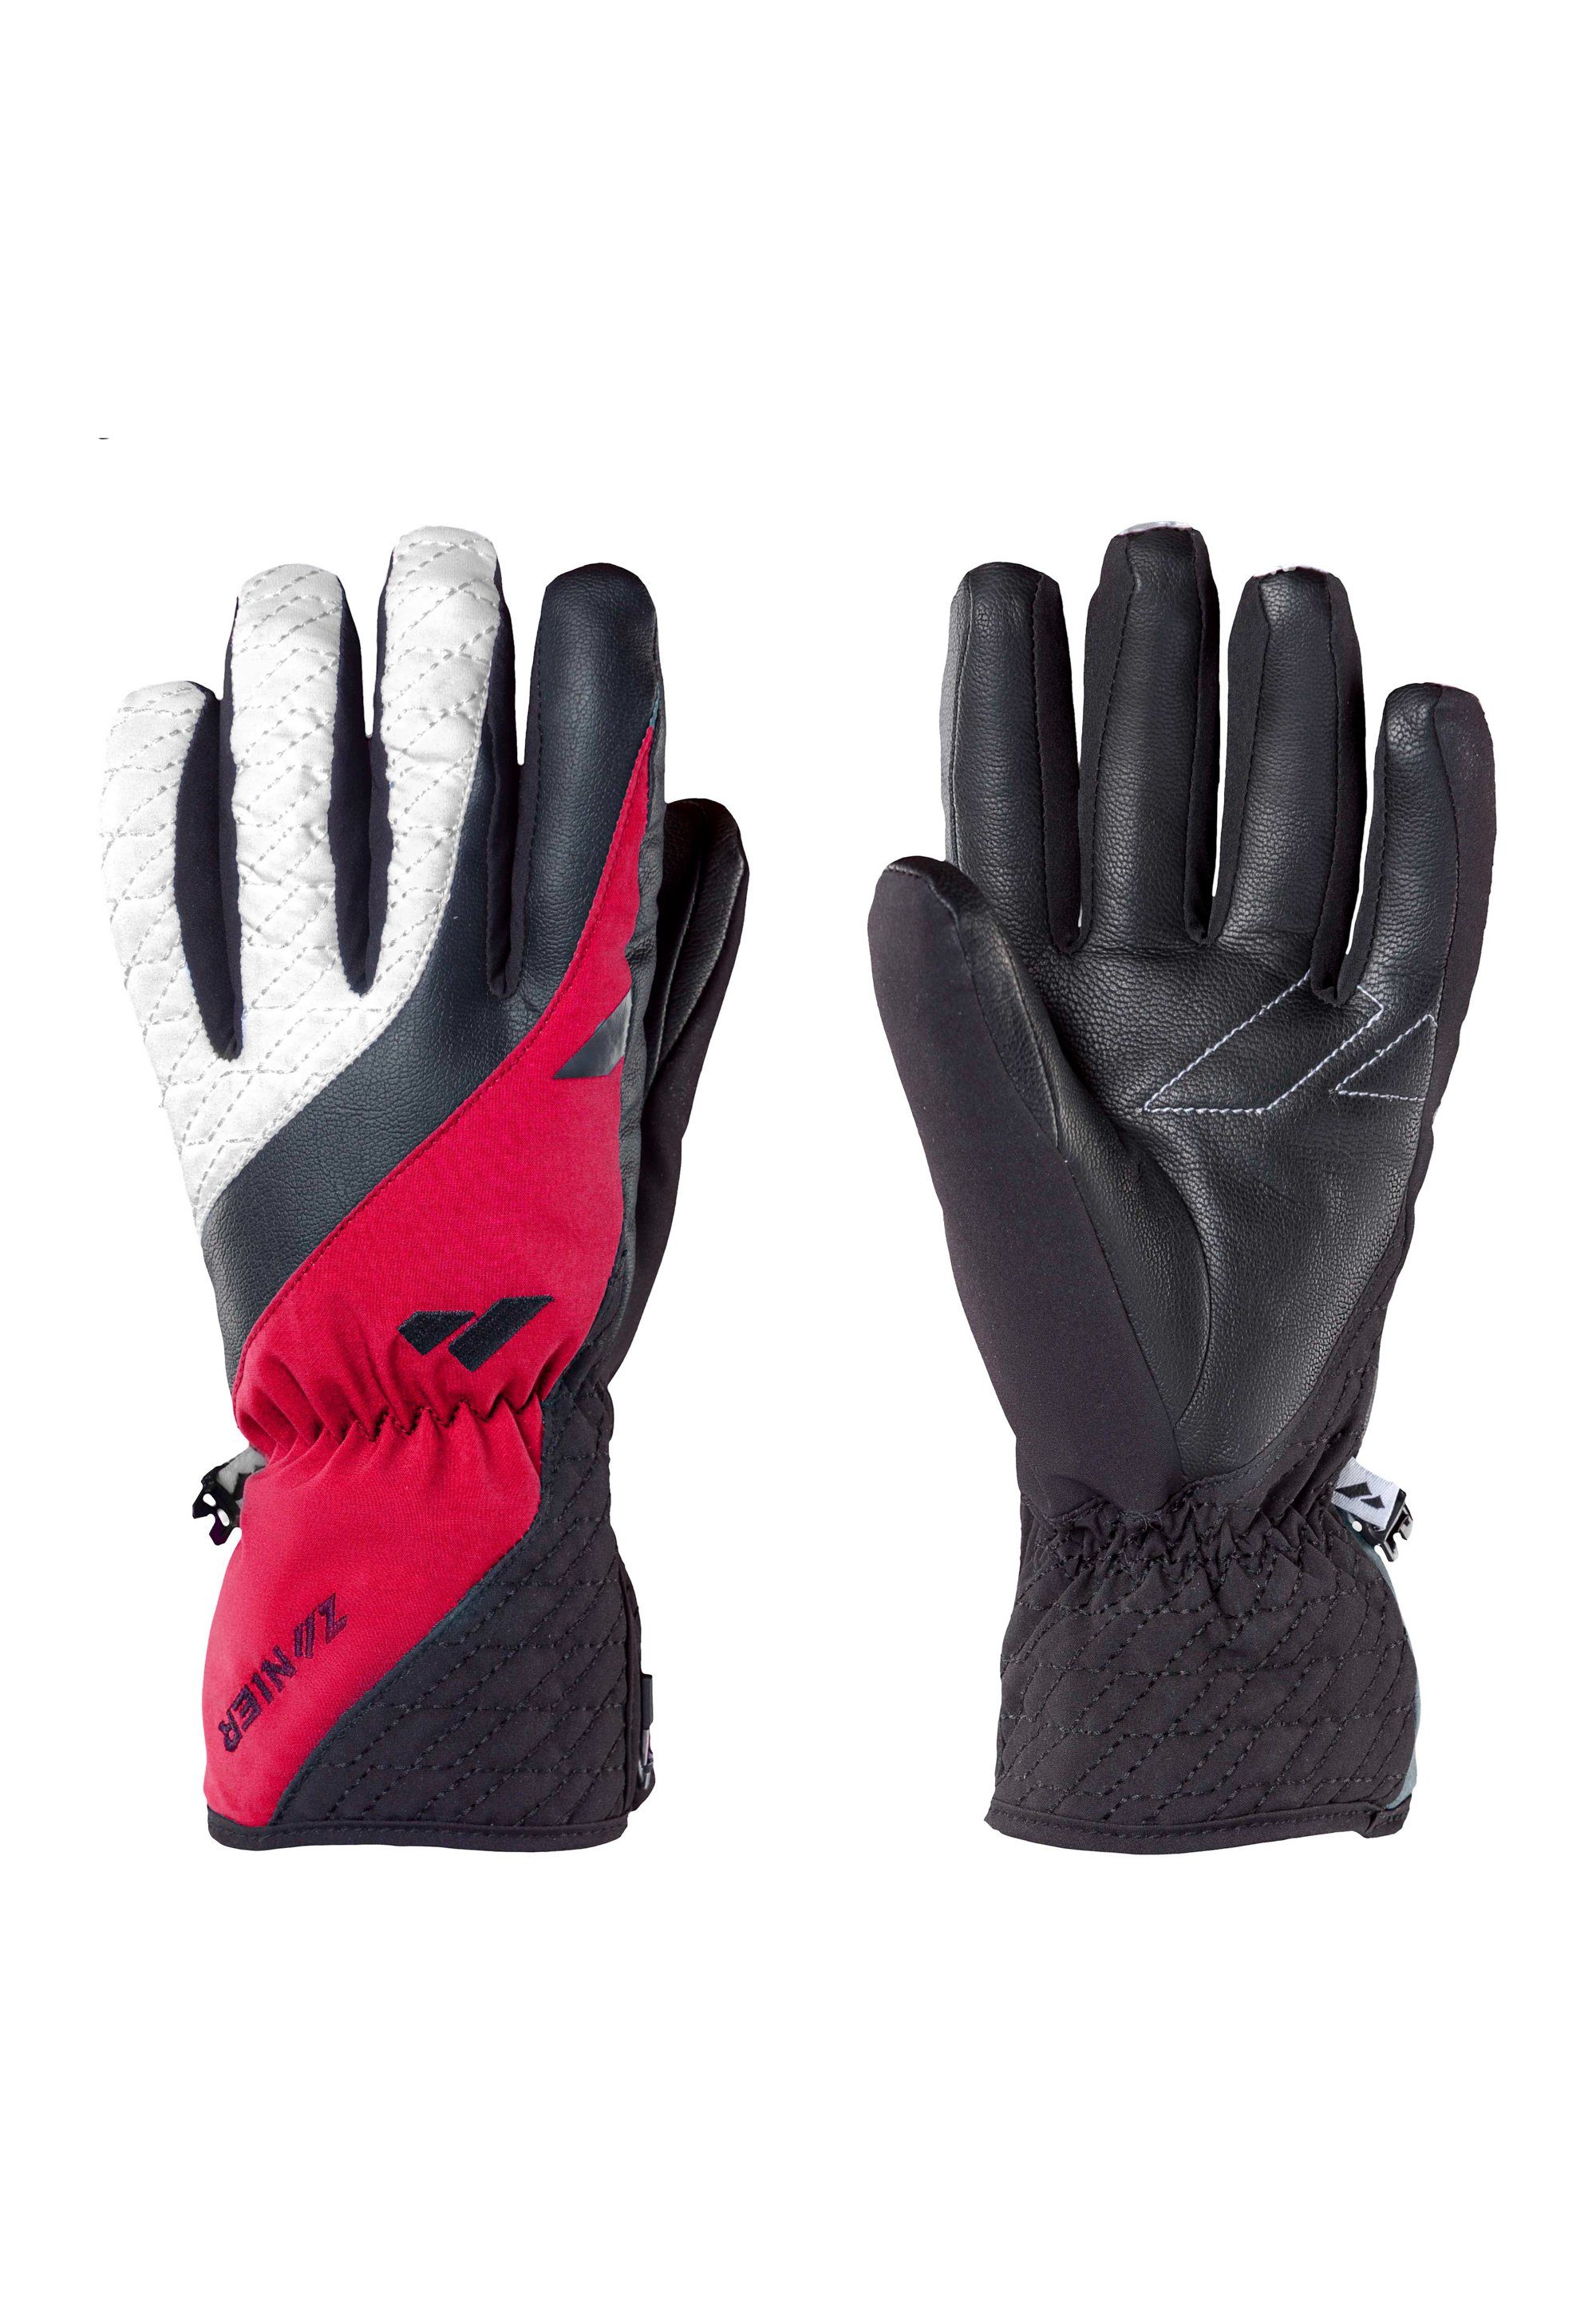 focus gloves on AURACH.GTX Zanier Multisporthandschuhe Schwarz-Fuchsia We